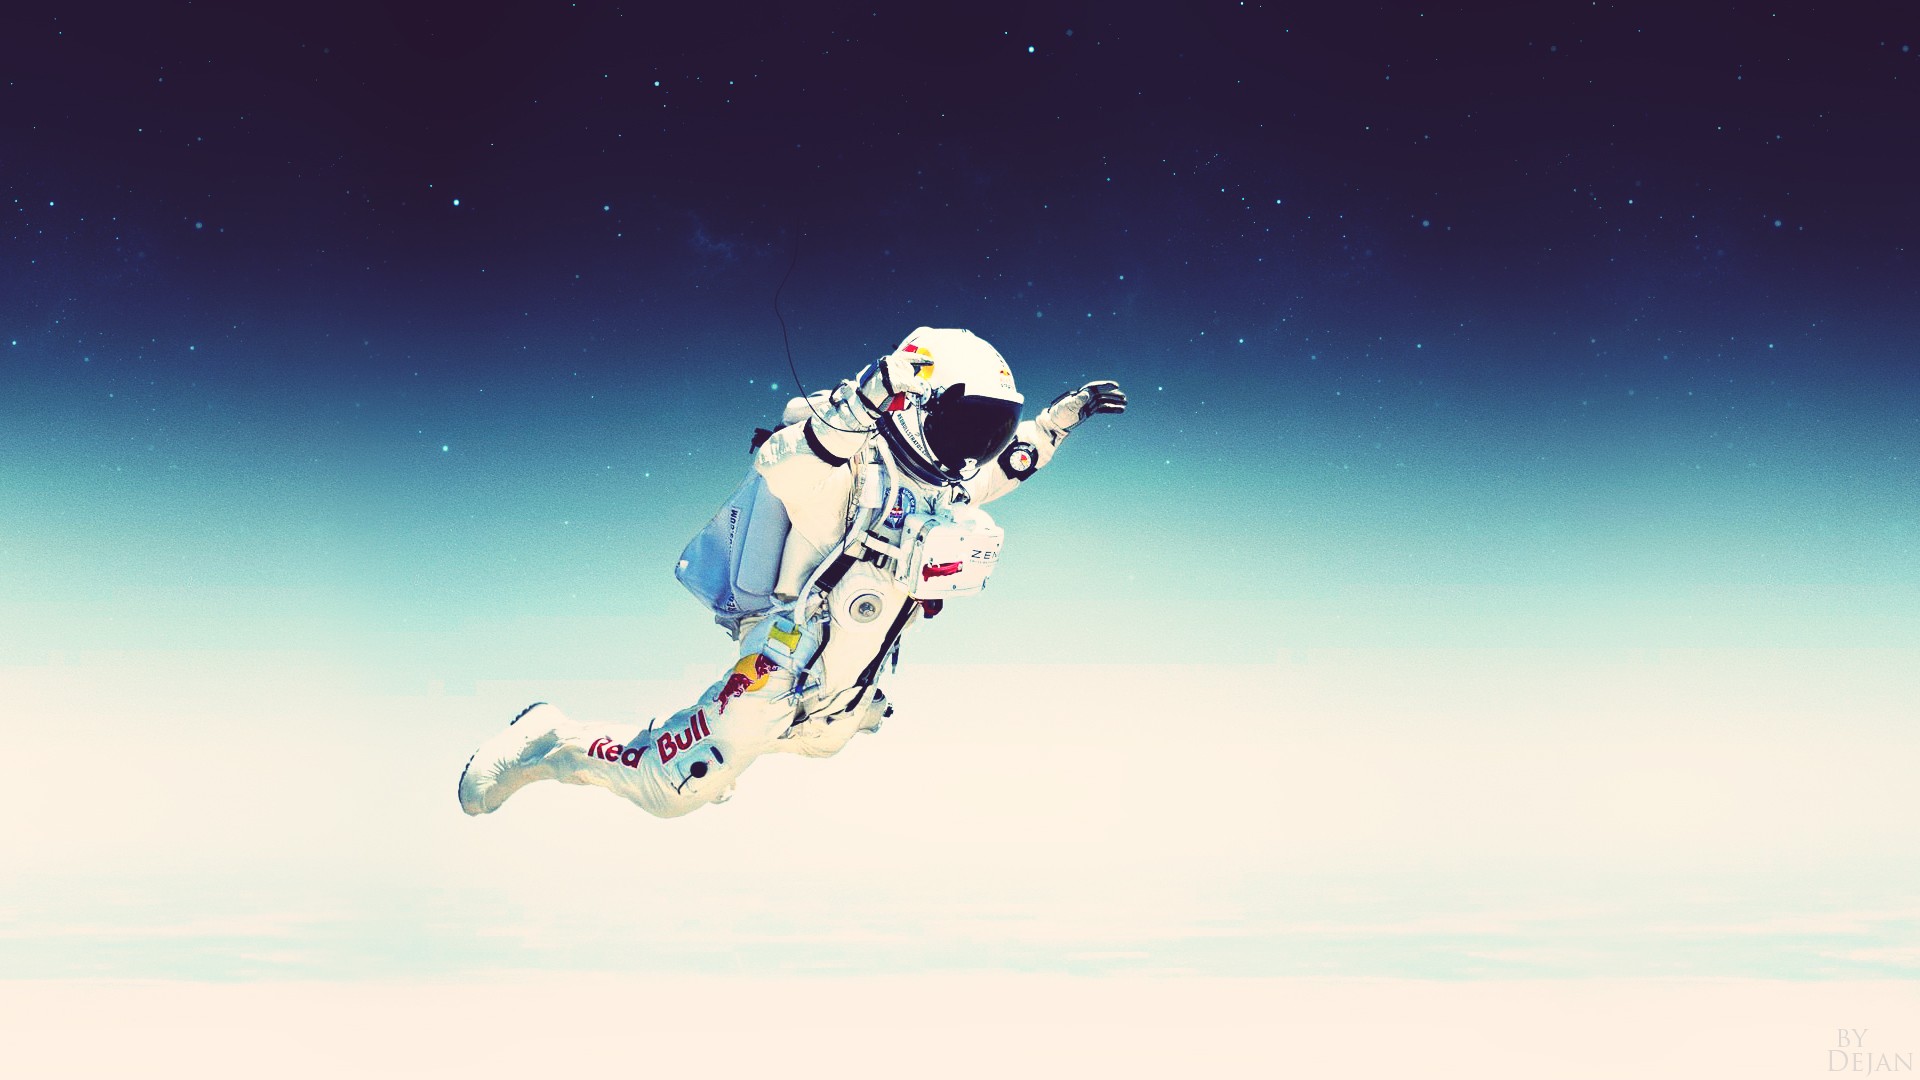 Jump Skydiving Felix Baumgartner Red Bull 1920x1080